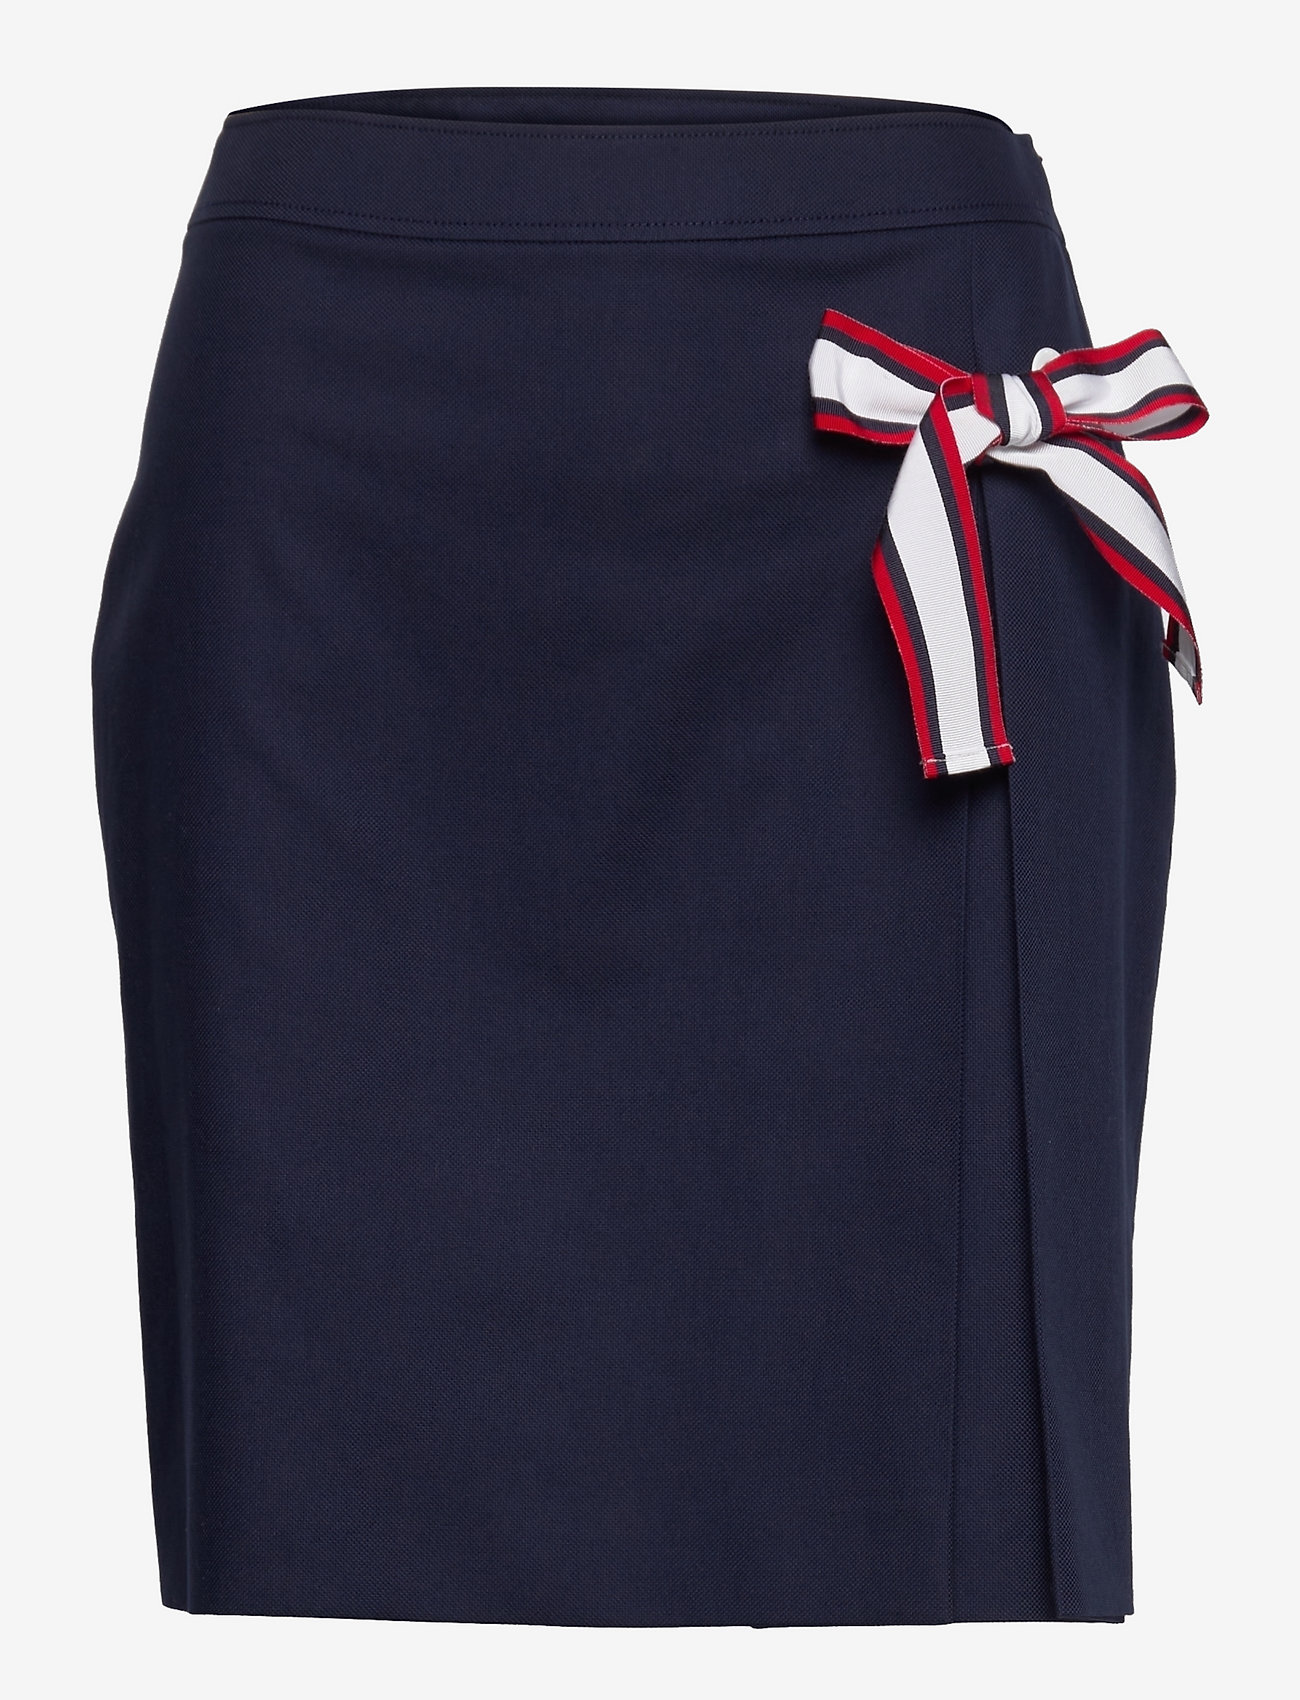 discount 95% Blue 36                  EU Bershka casual skirt WOMEN FASHION Skirts Casual skirt 